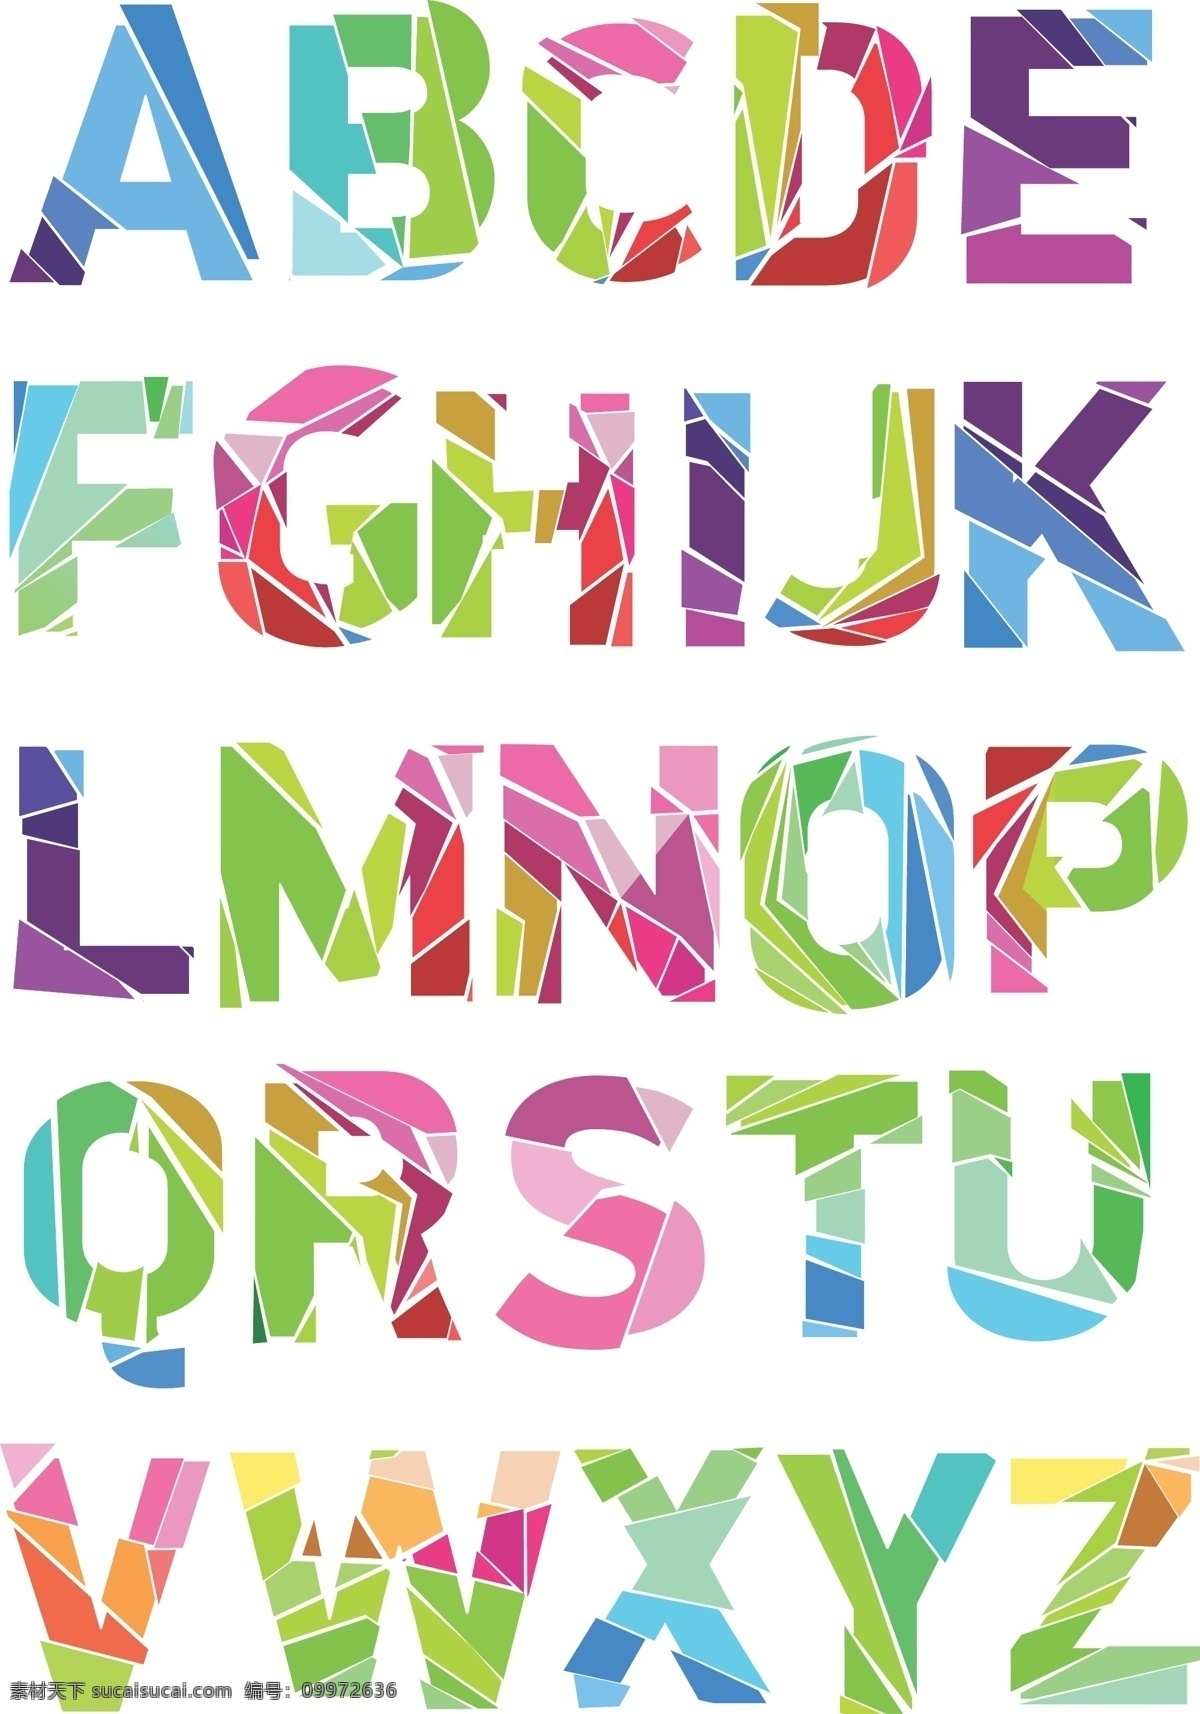 时尚 个性 英文 字母 矢量 矢量素材 26个字母 符号 其他设计 数字符号 形状 质感 创意 彩色